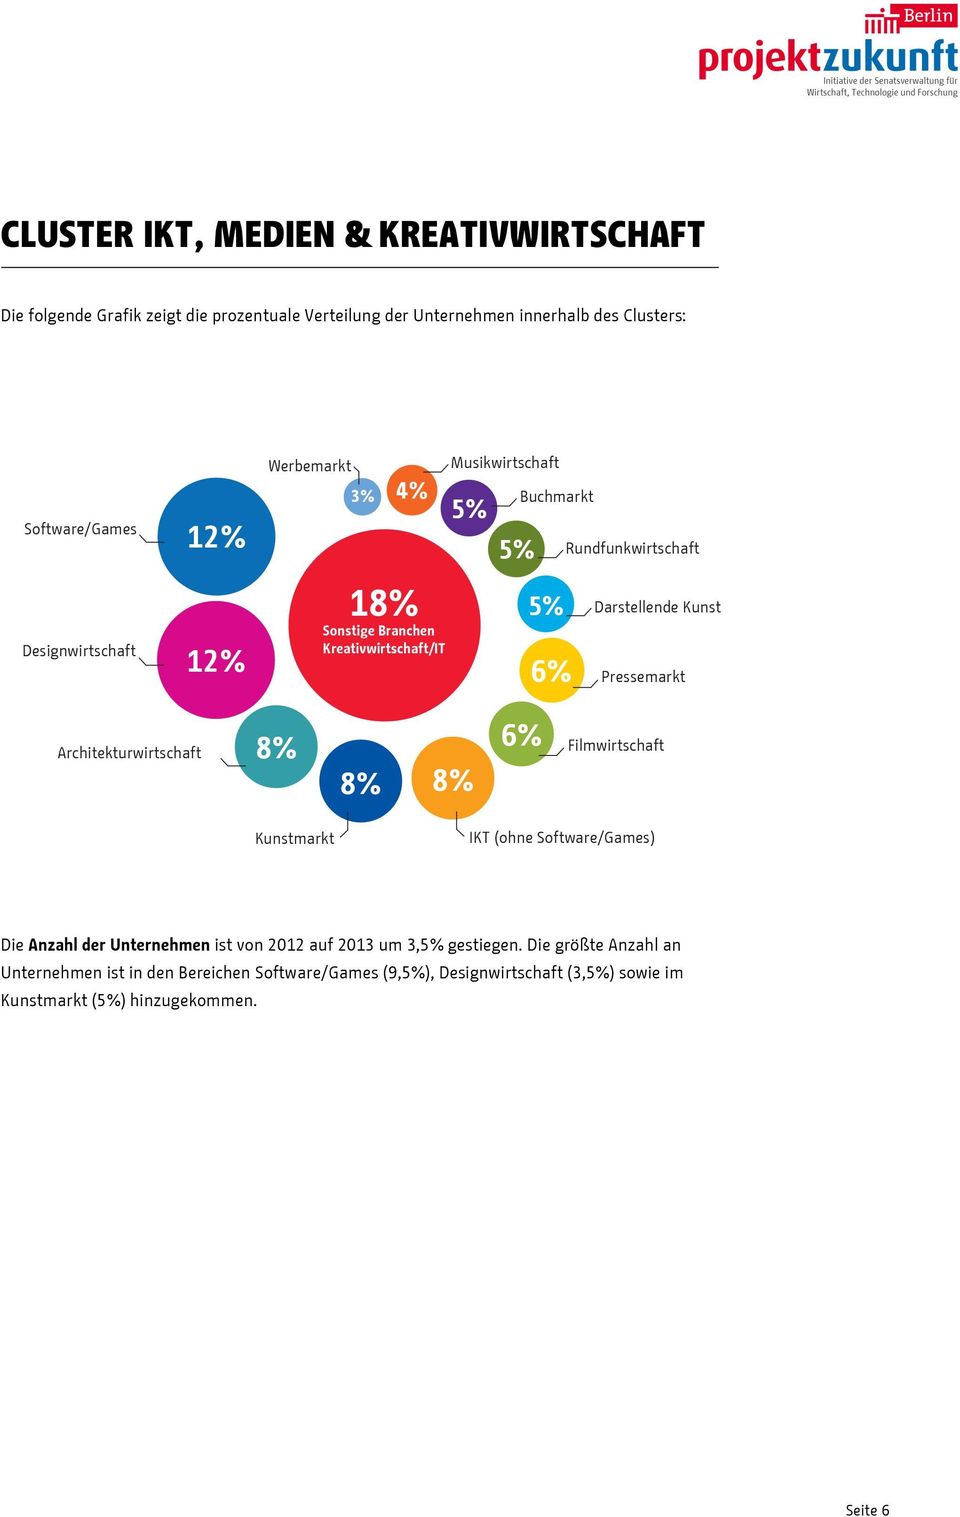 Pressemarkt Architekturwirtschaft 8% 8% 8% 6% Filmwirtschaft Kunstmarkt IKT (ohne Software/Games) Die Anzahl der Unternehmen ist von 2012 auf 2013 um